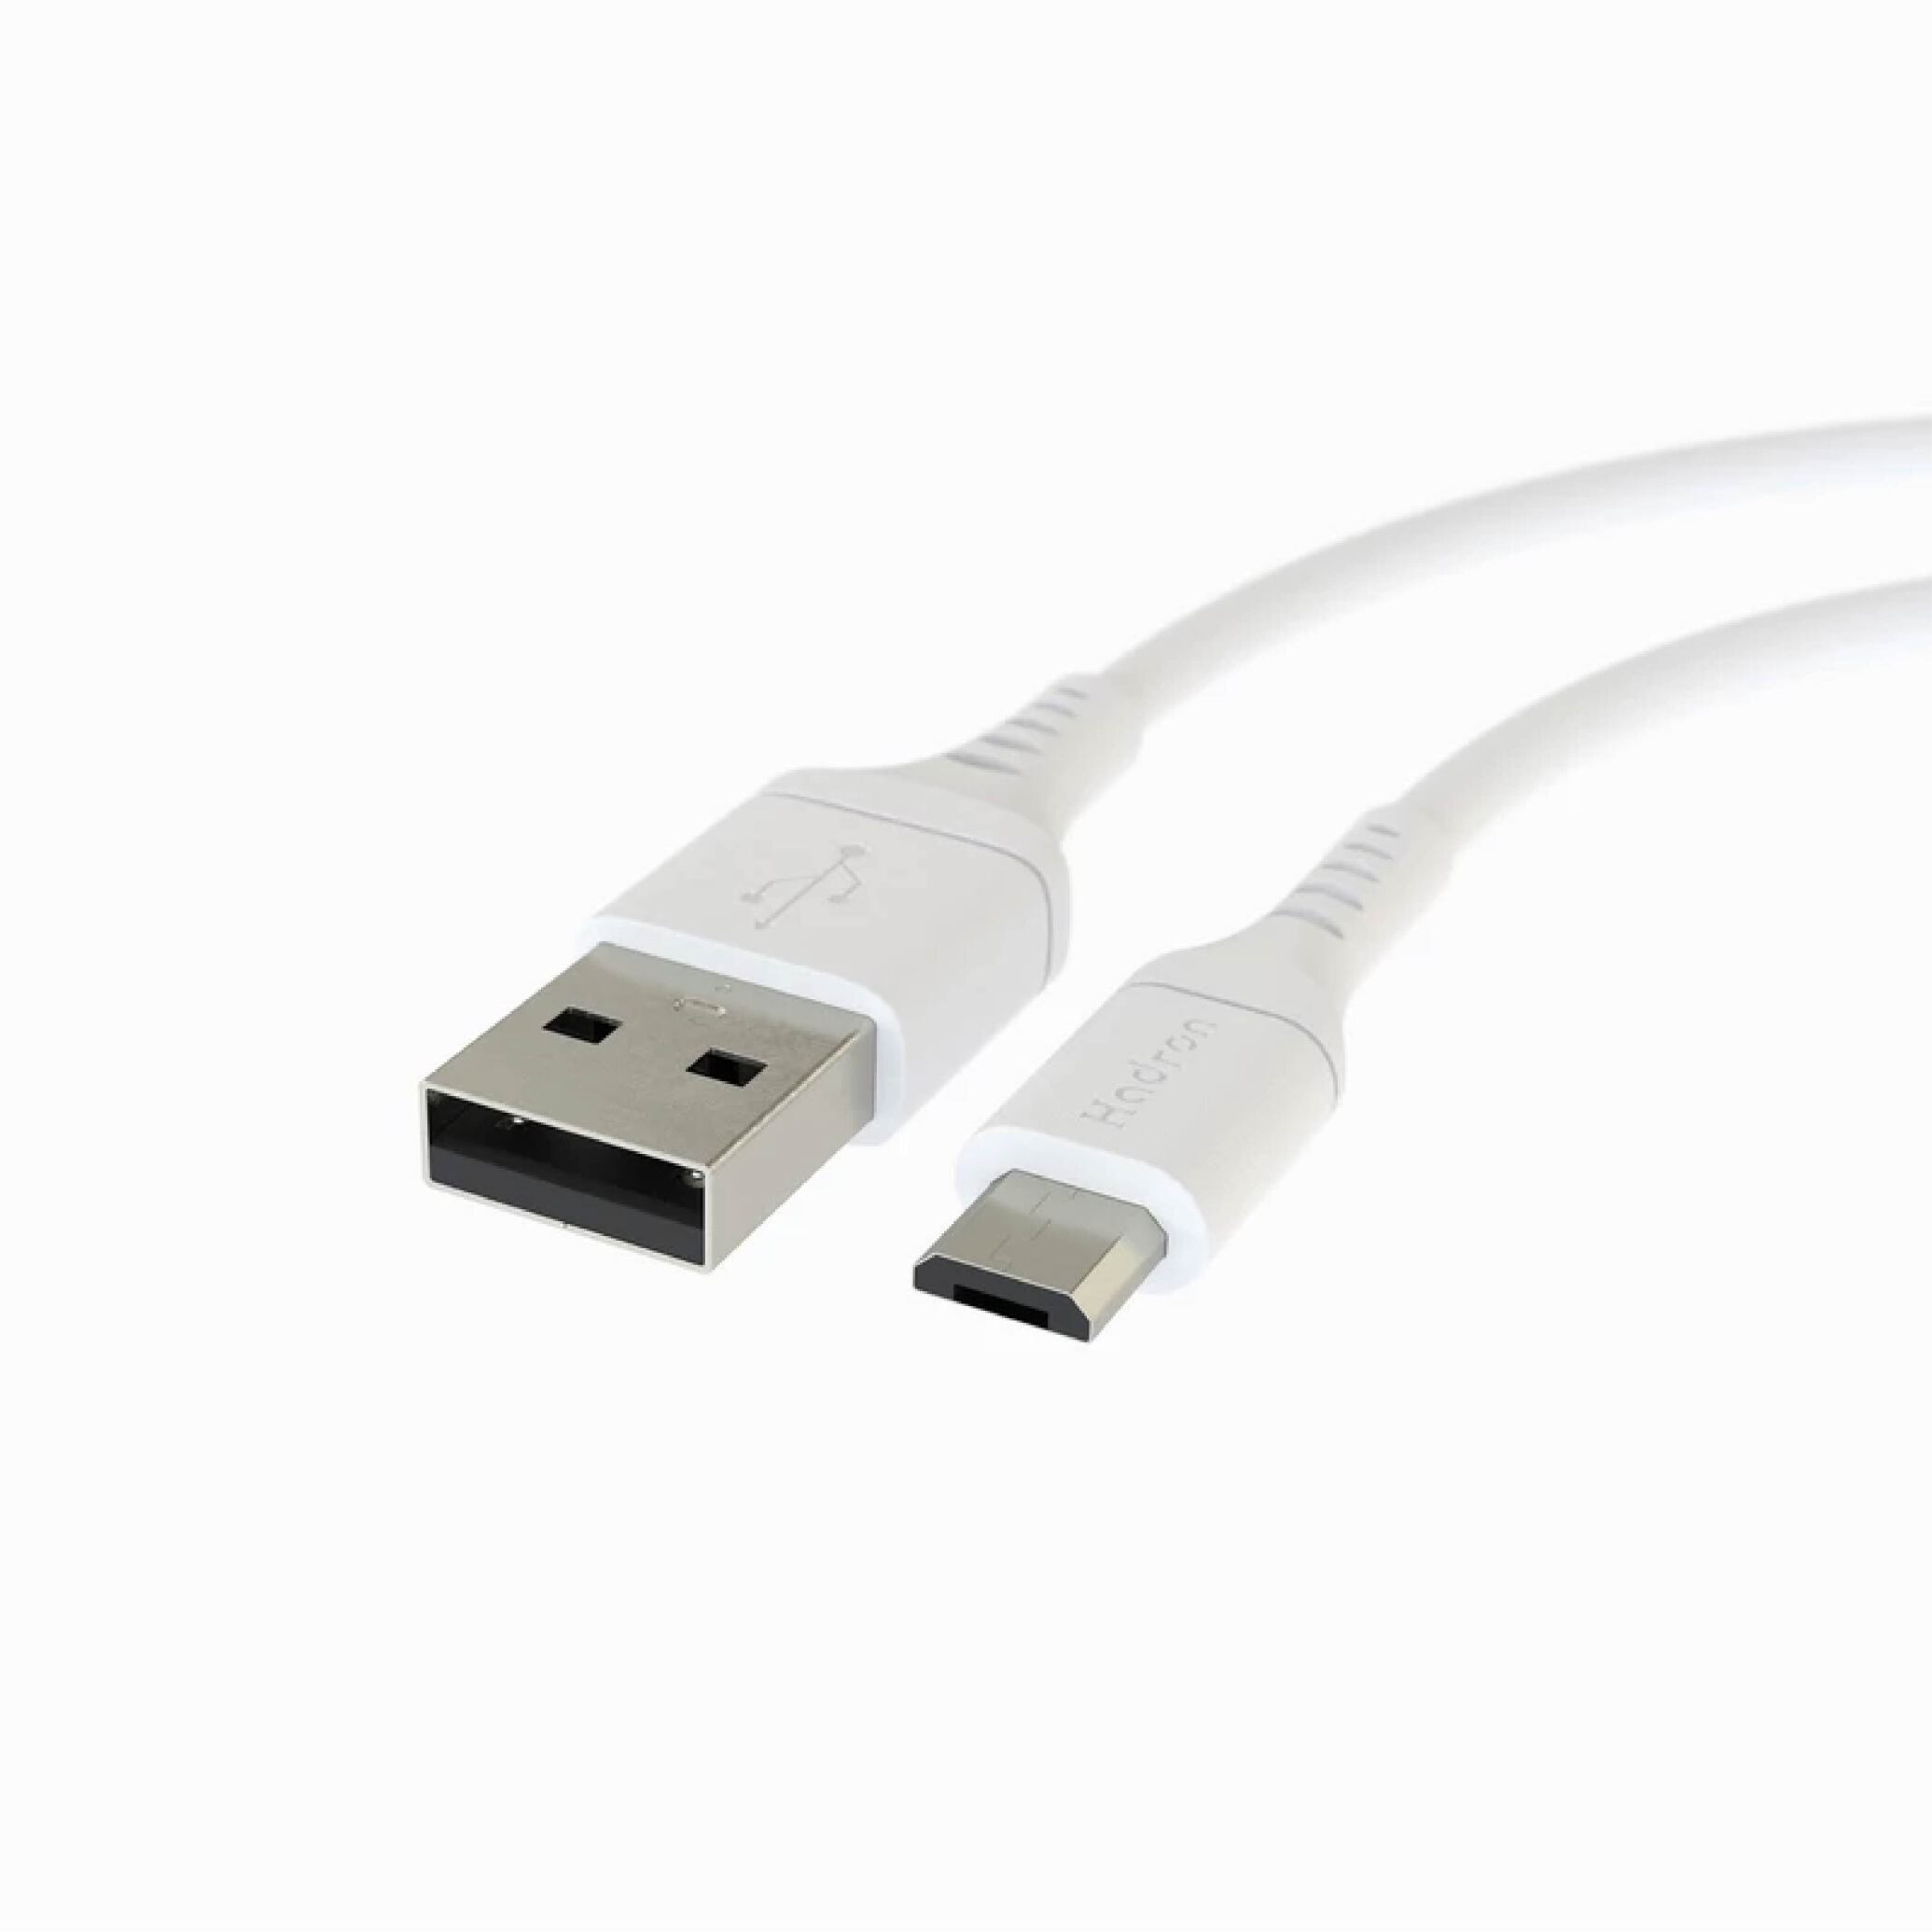  کابل USB به micro USB 